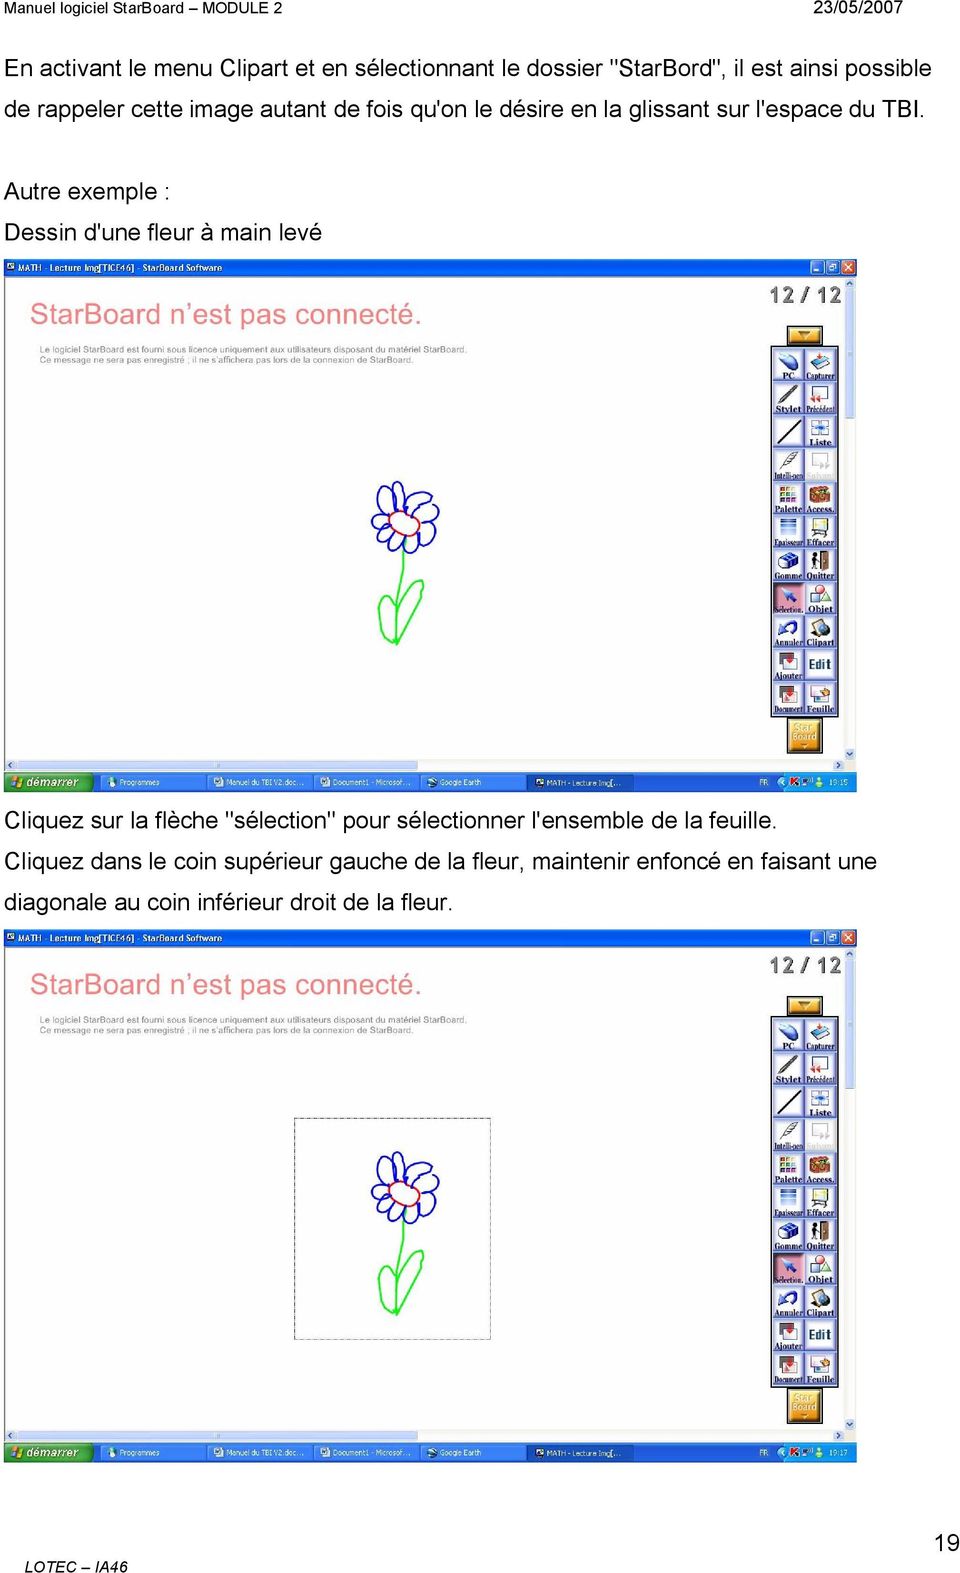 Autre exemple : Dessin d'une fleur à main levé Cliquez sur la flèche "sélection" pour sélectionner l'ensemble